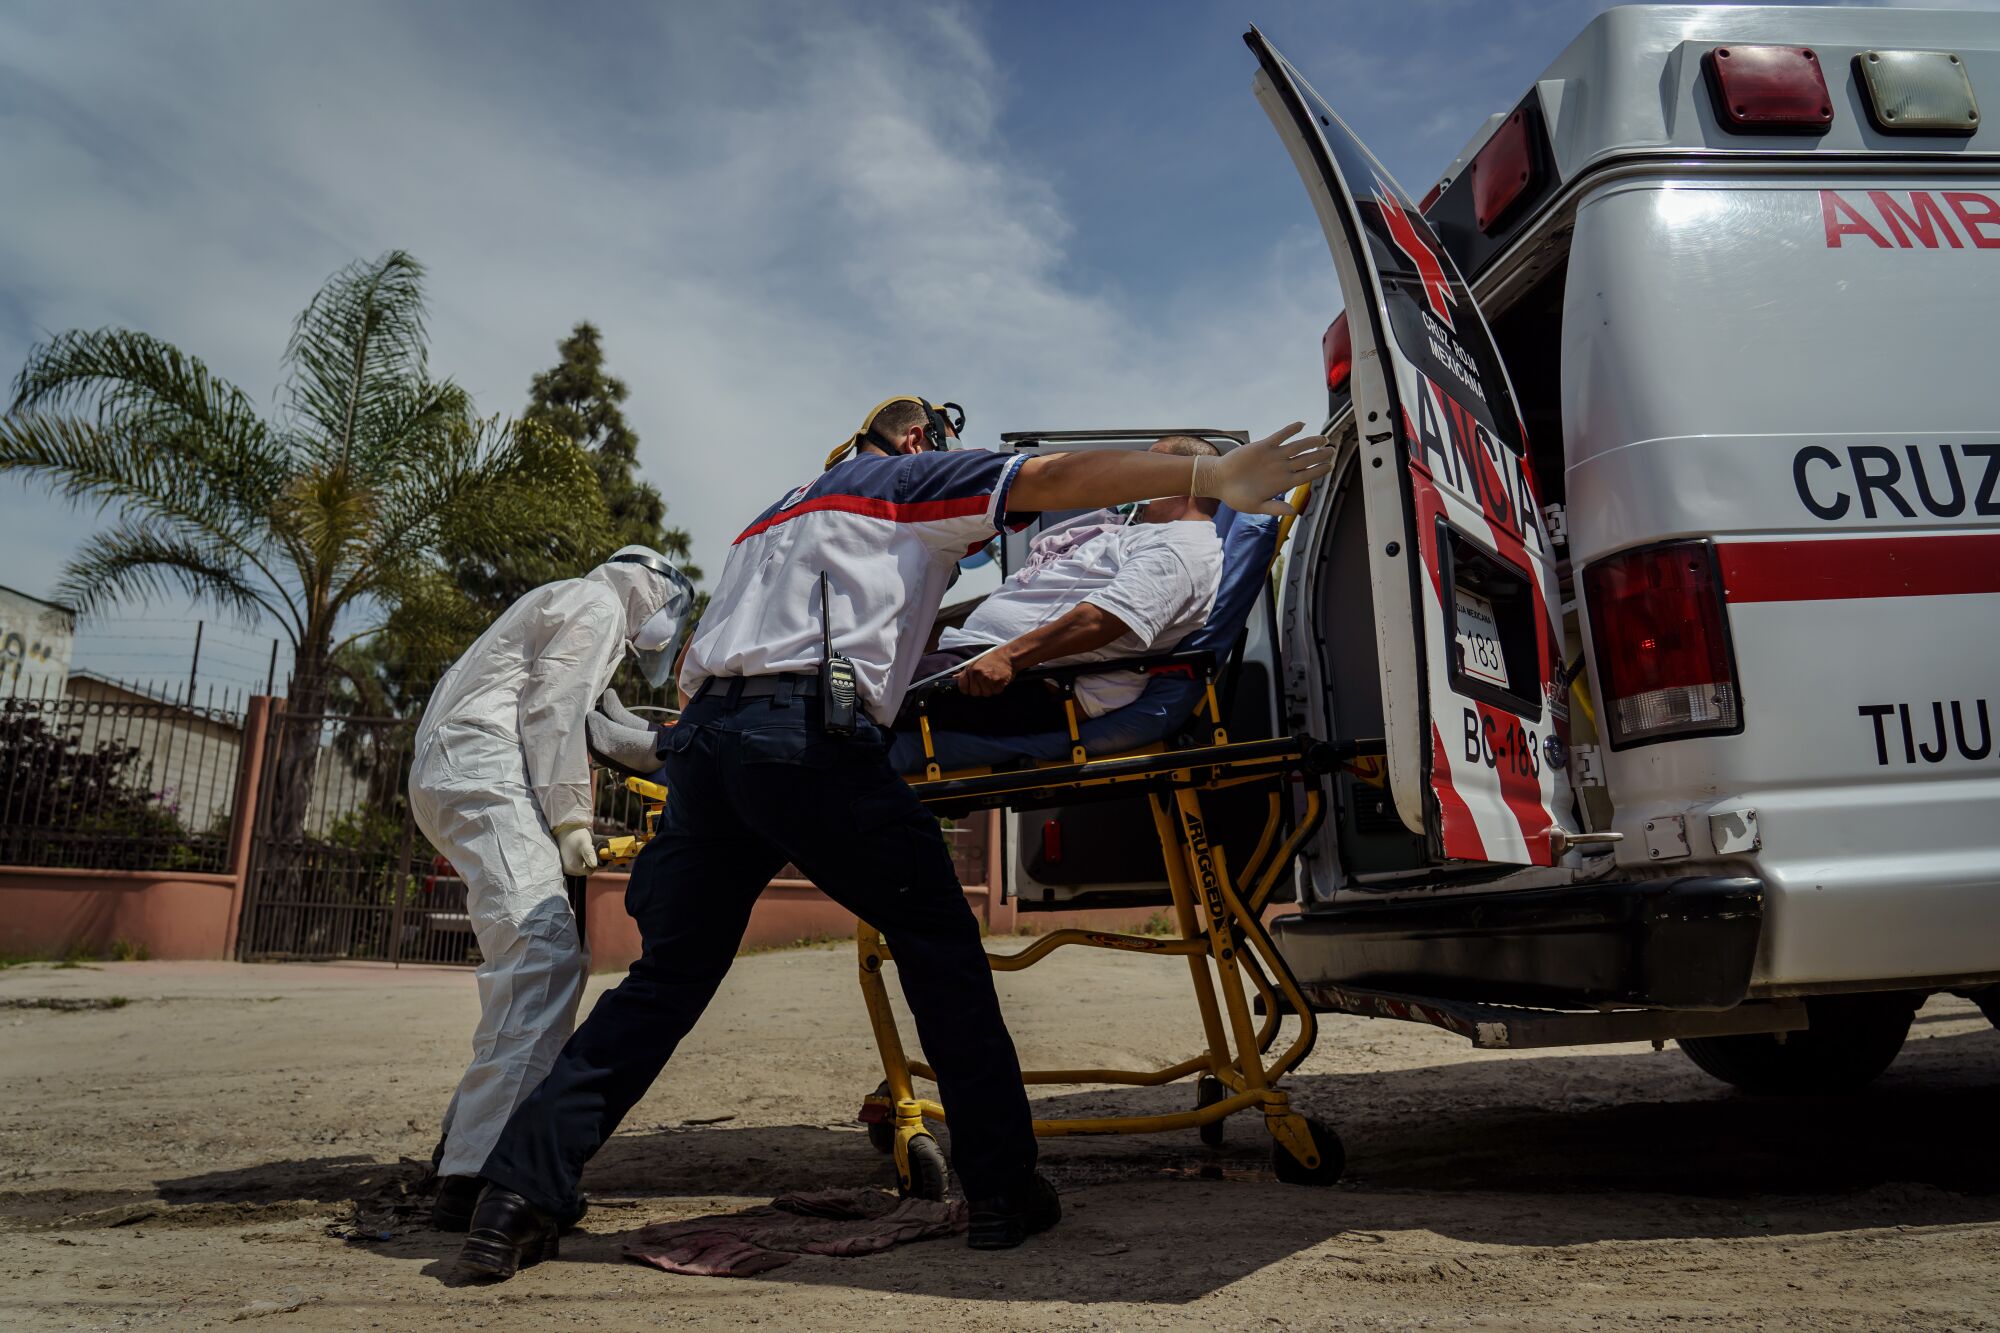 Sergio García abre de par en par la puerta de la ambulancia mientras los paramédicos de la Cruz Roja ayudan a transportar a Eduardo Dionisio Molina, de 41 años, que tiene síntomas relacionados con COVID-19, a un hospital cercano desde su casa en el barrio Ejido Matamoros de Tijuana, México, el 29 de abril de 2020.